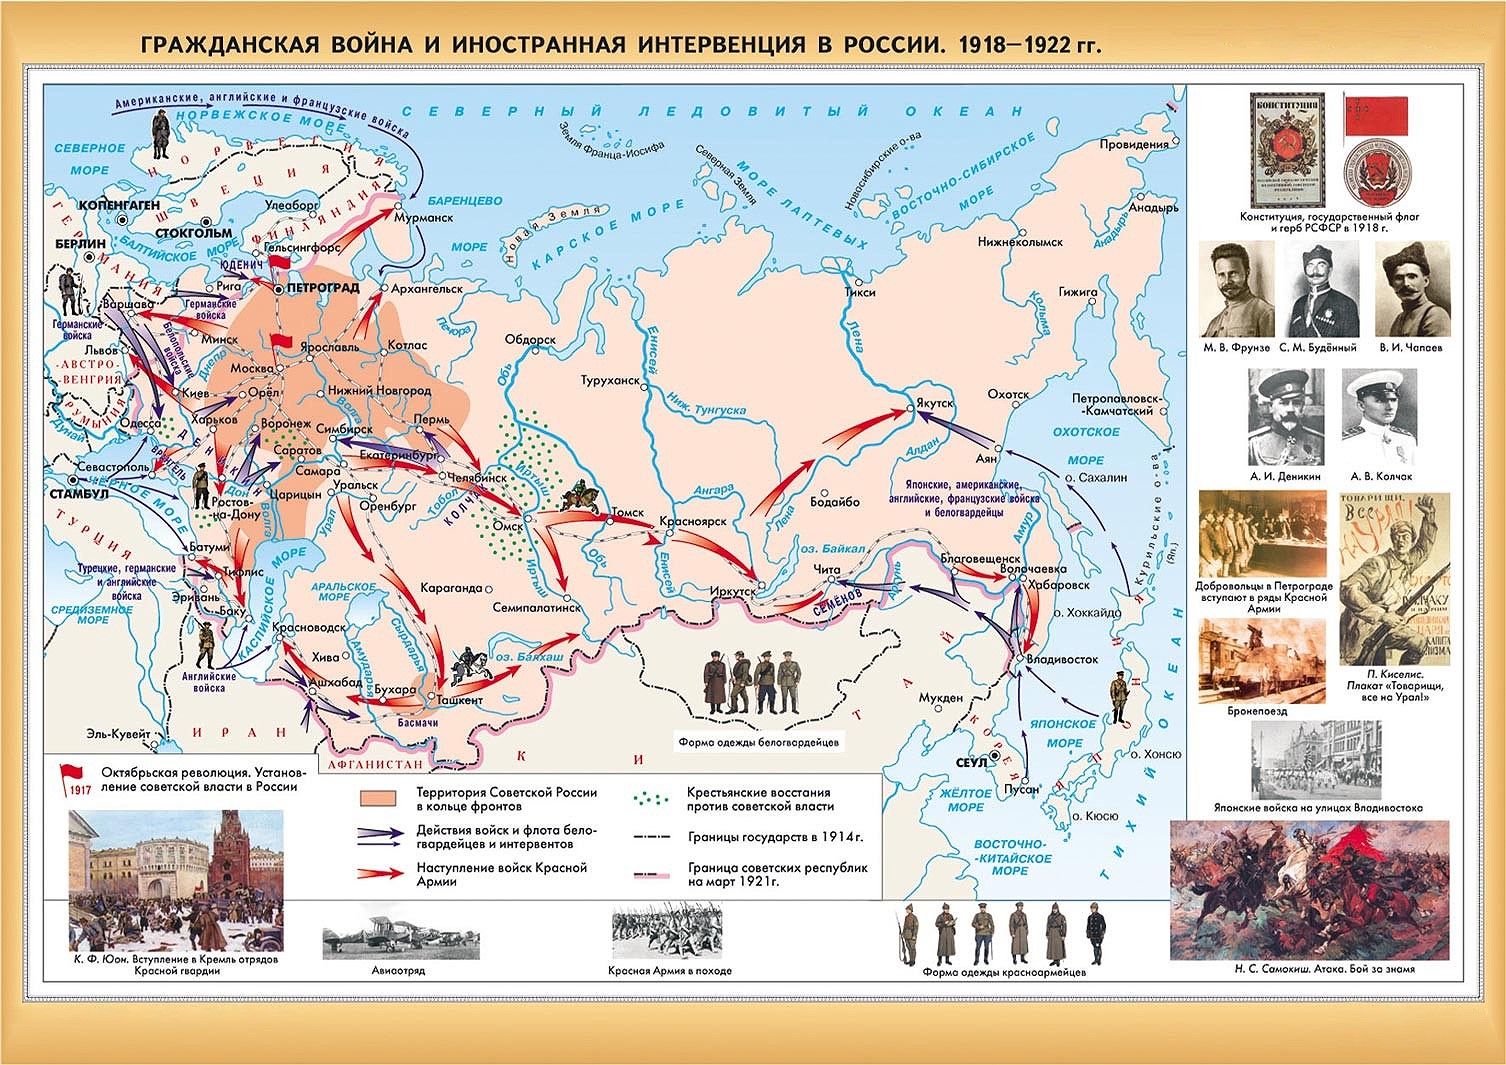 Как видим на карте Советская республика находилась в кольце врагов, подходы к портам и границам были перекрыты